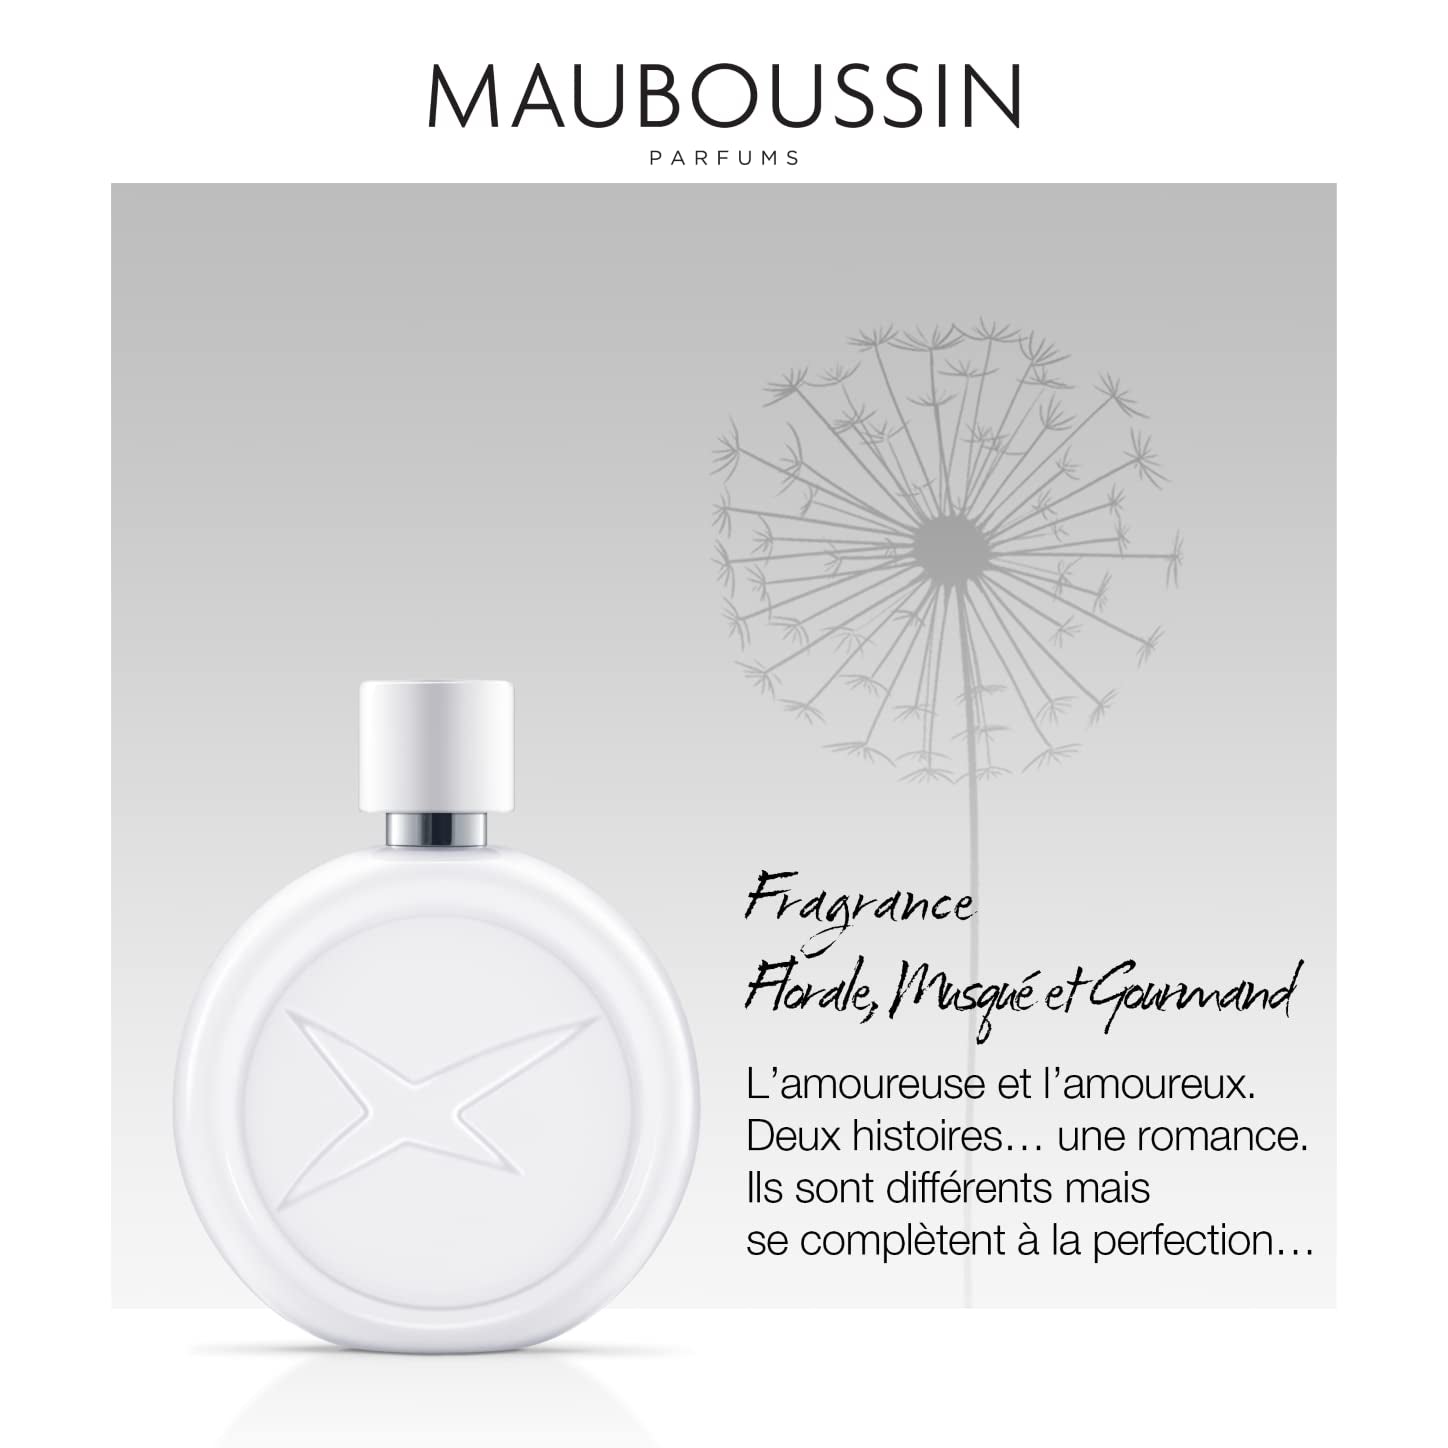 Mauboussin - Une Histoire De Femme Sensuelle 90ml (3 Fl Oz) - Eau de Parfum for Women - Floral, Musky & Gourmand Scents